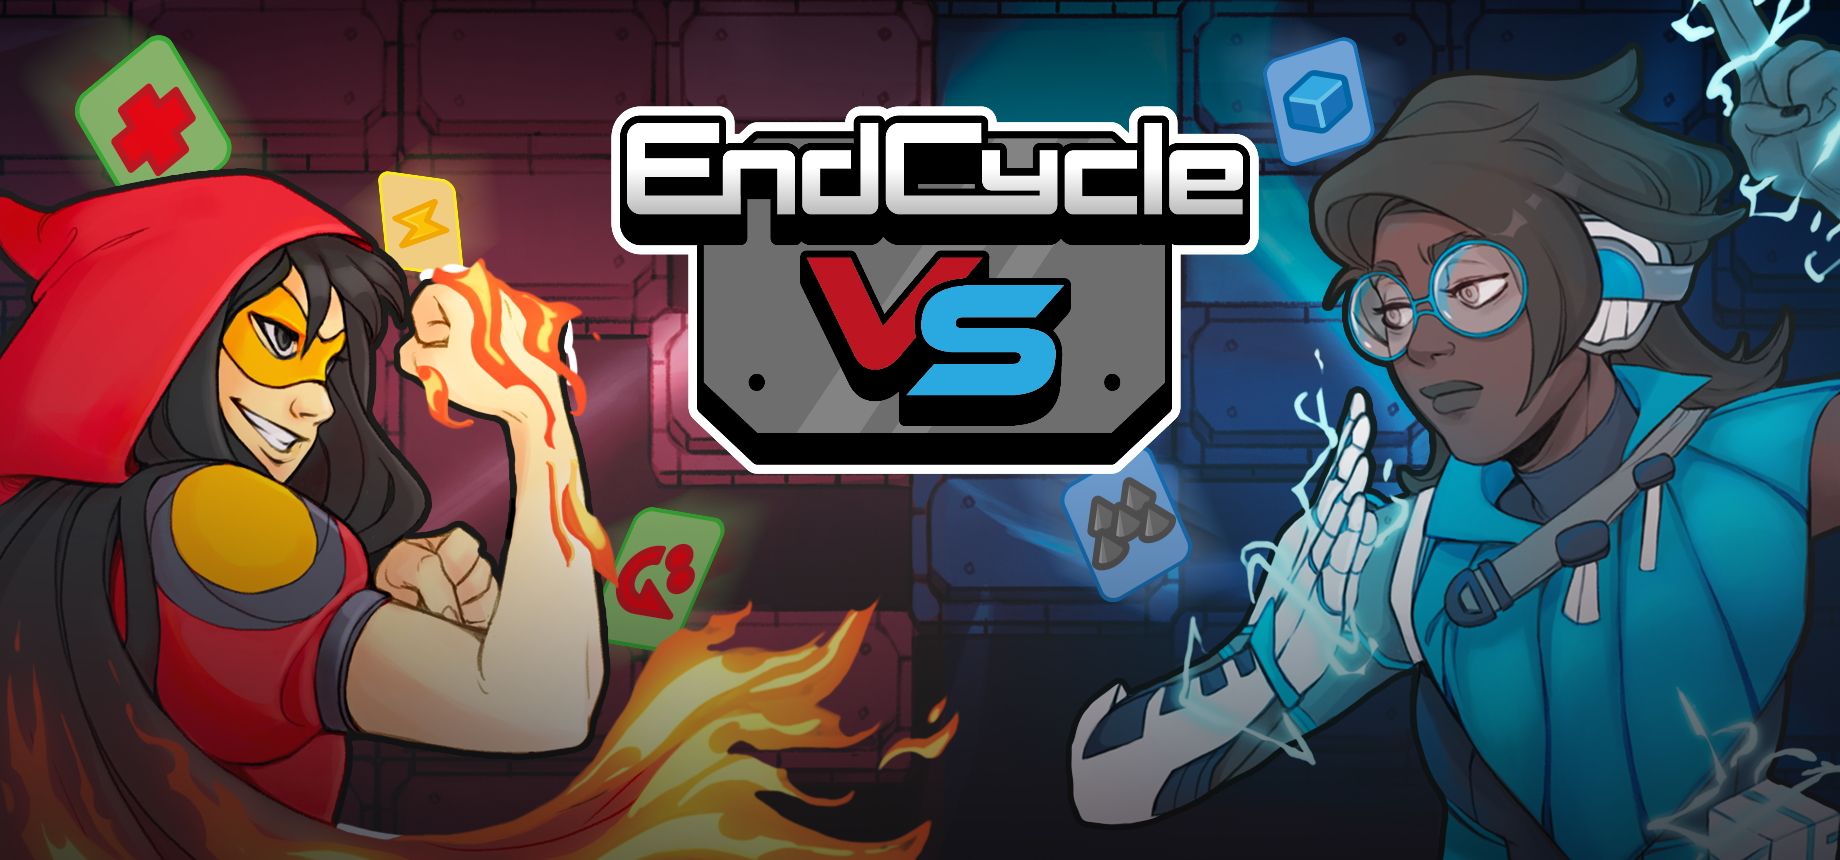 EndCycle VS release hero